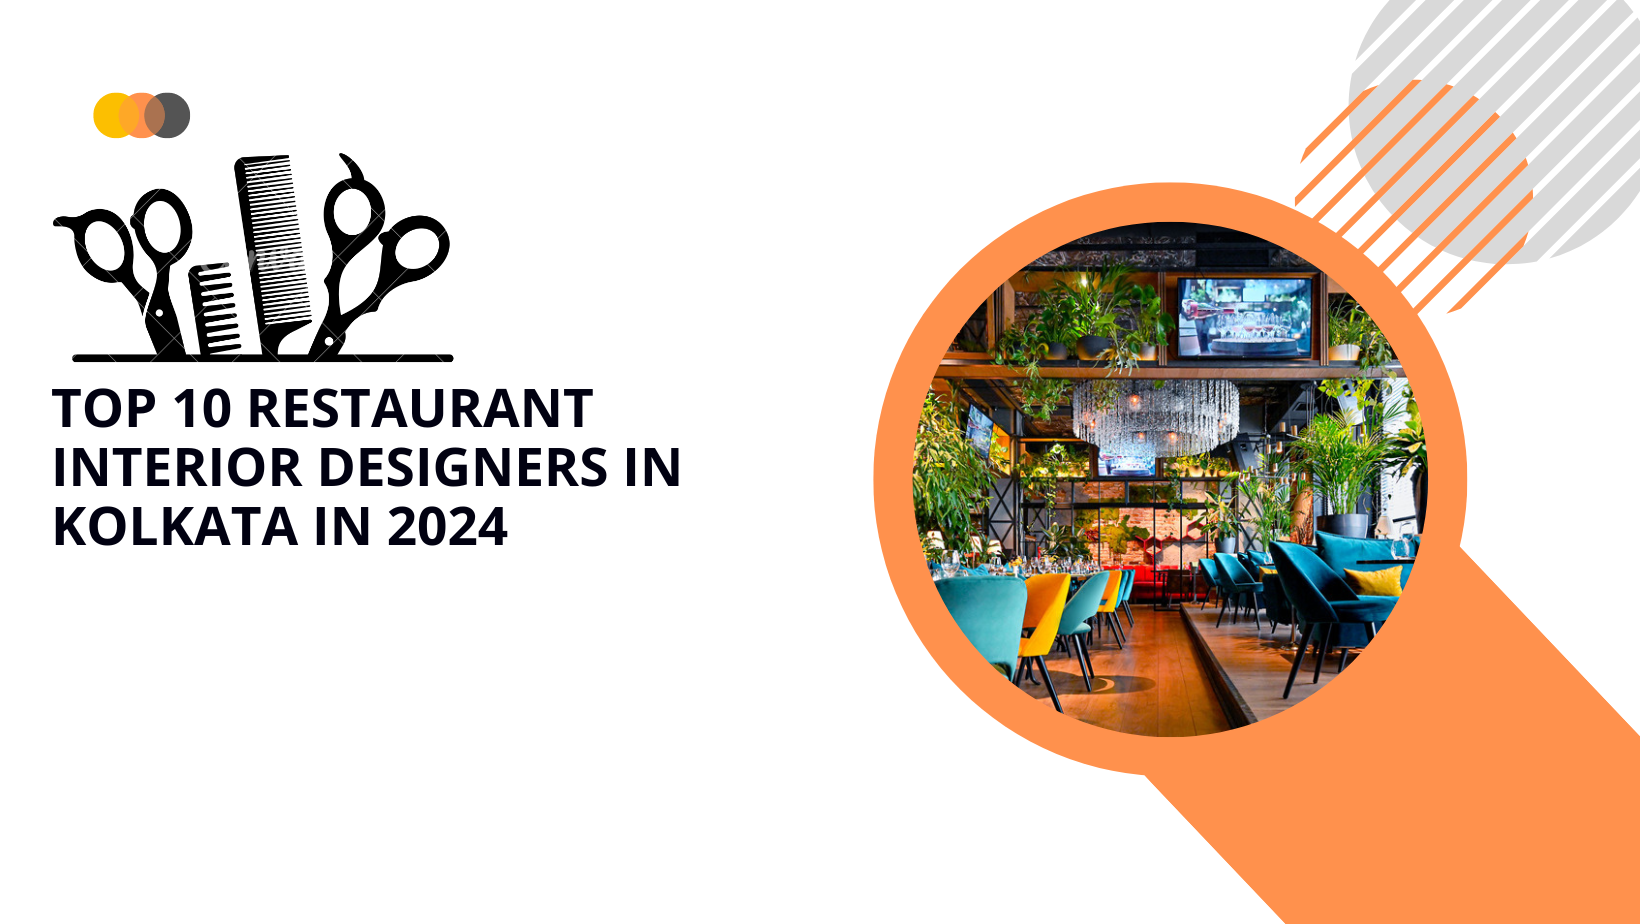 Top 10 Restaurant Interior Designers in Kolkata in 2024